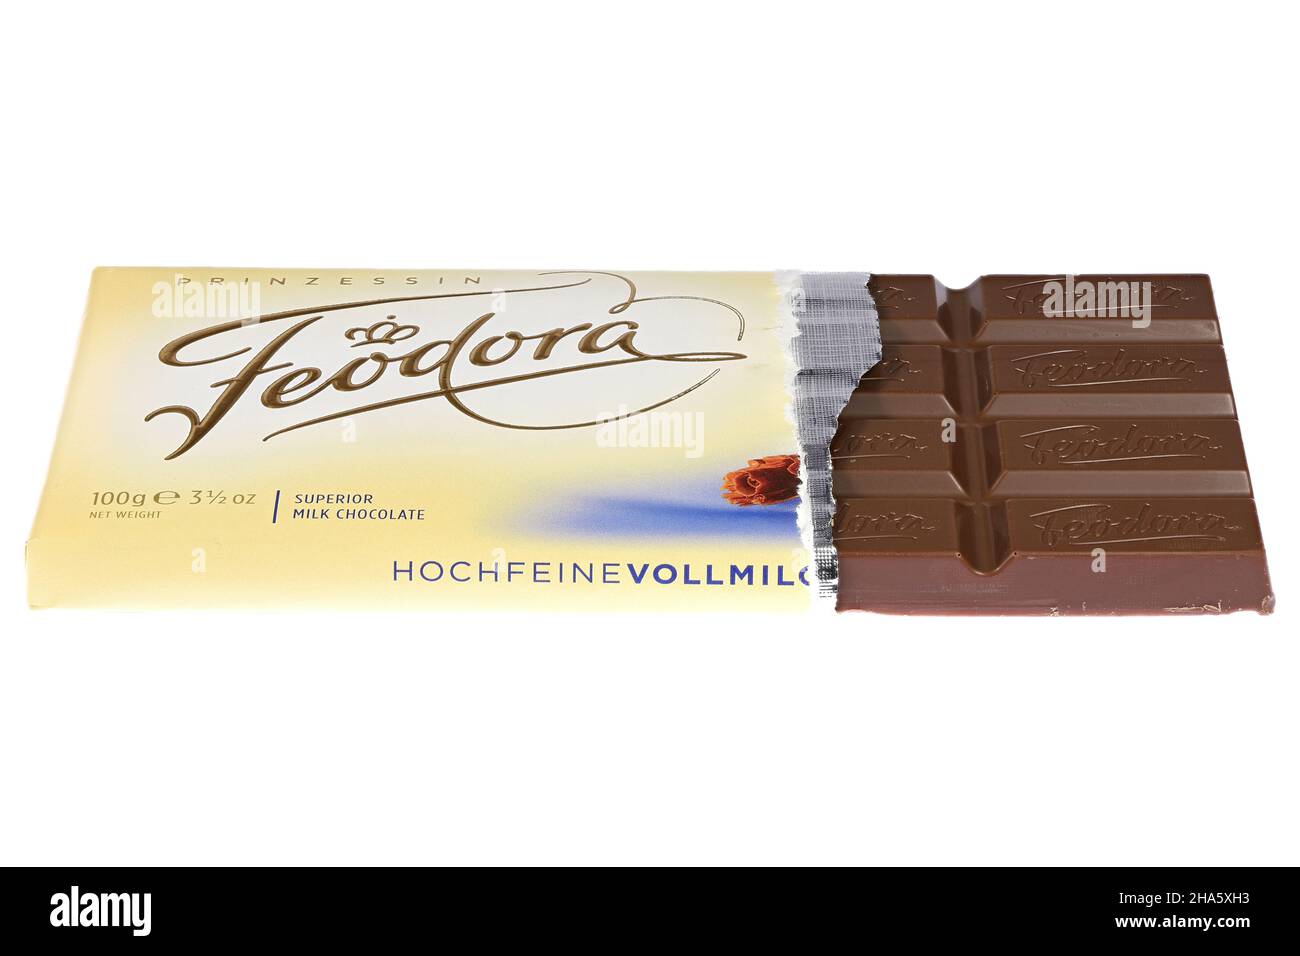 Feodora überlegene Milchschokolade isoliert auf weißem Hintergrund Stockfoto